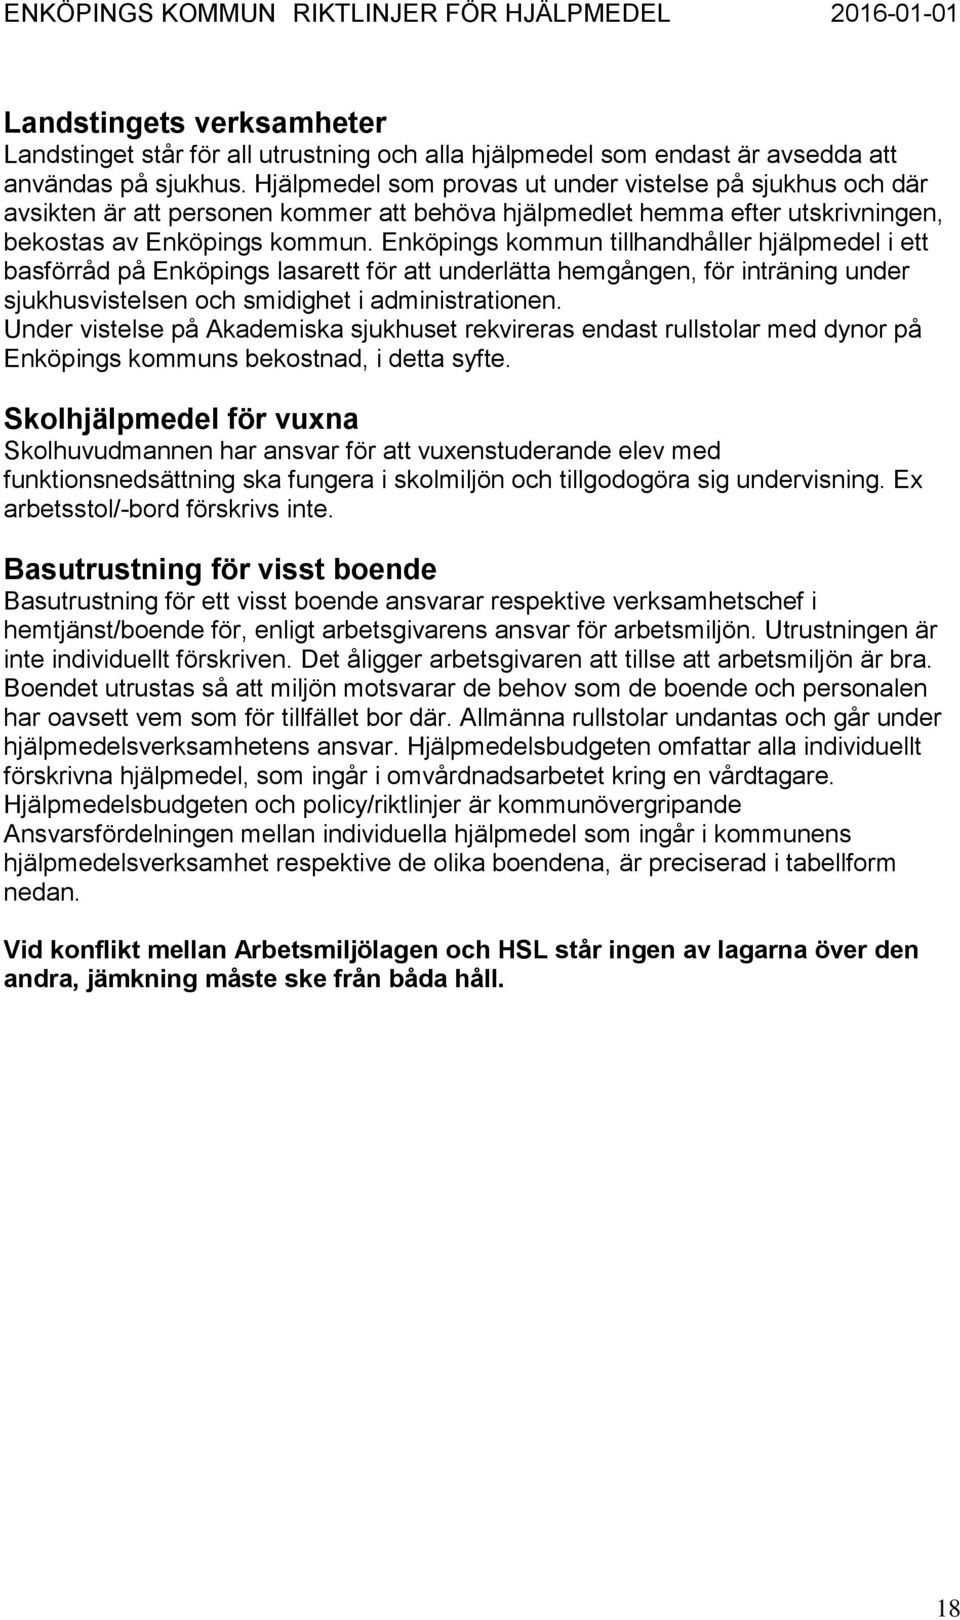 Enköpings kommun tillhandhåller hjälpmedel i ett basförråd på Enköpings lasarett för att underlätta hemgången, för inträning under sjukhusvistelsen och smidighet i administrationen.